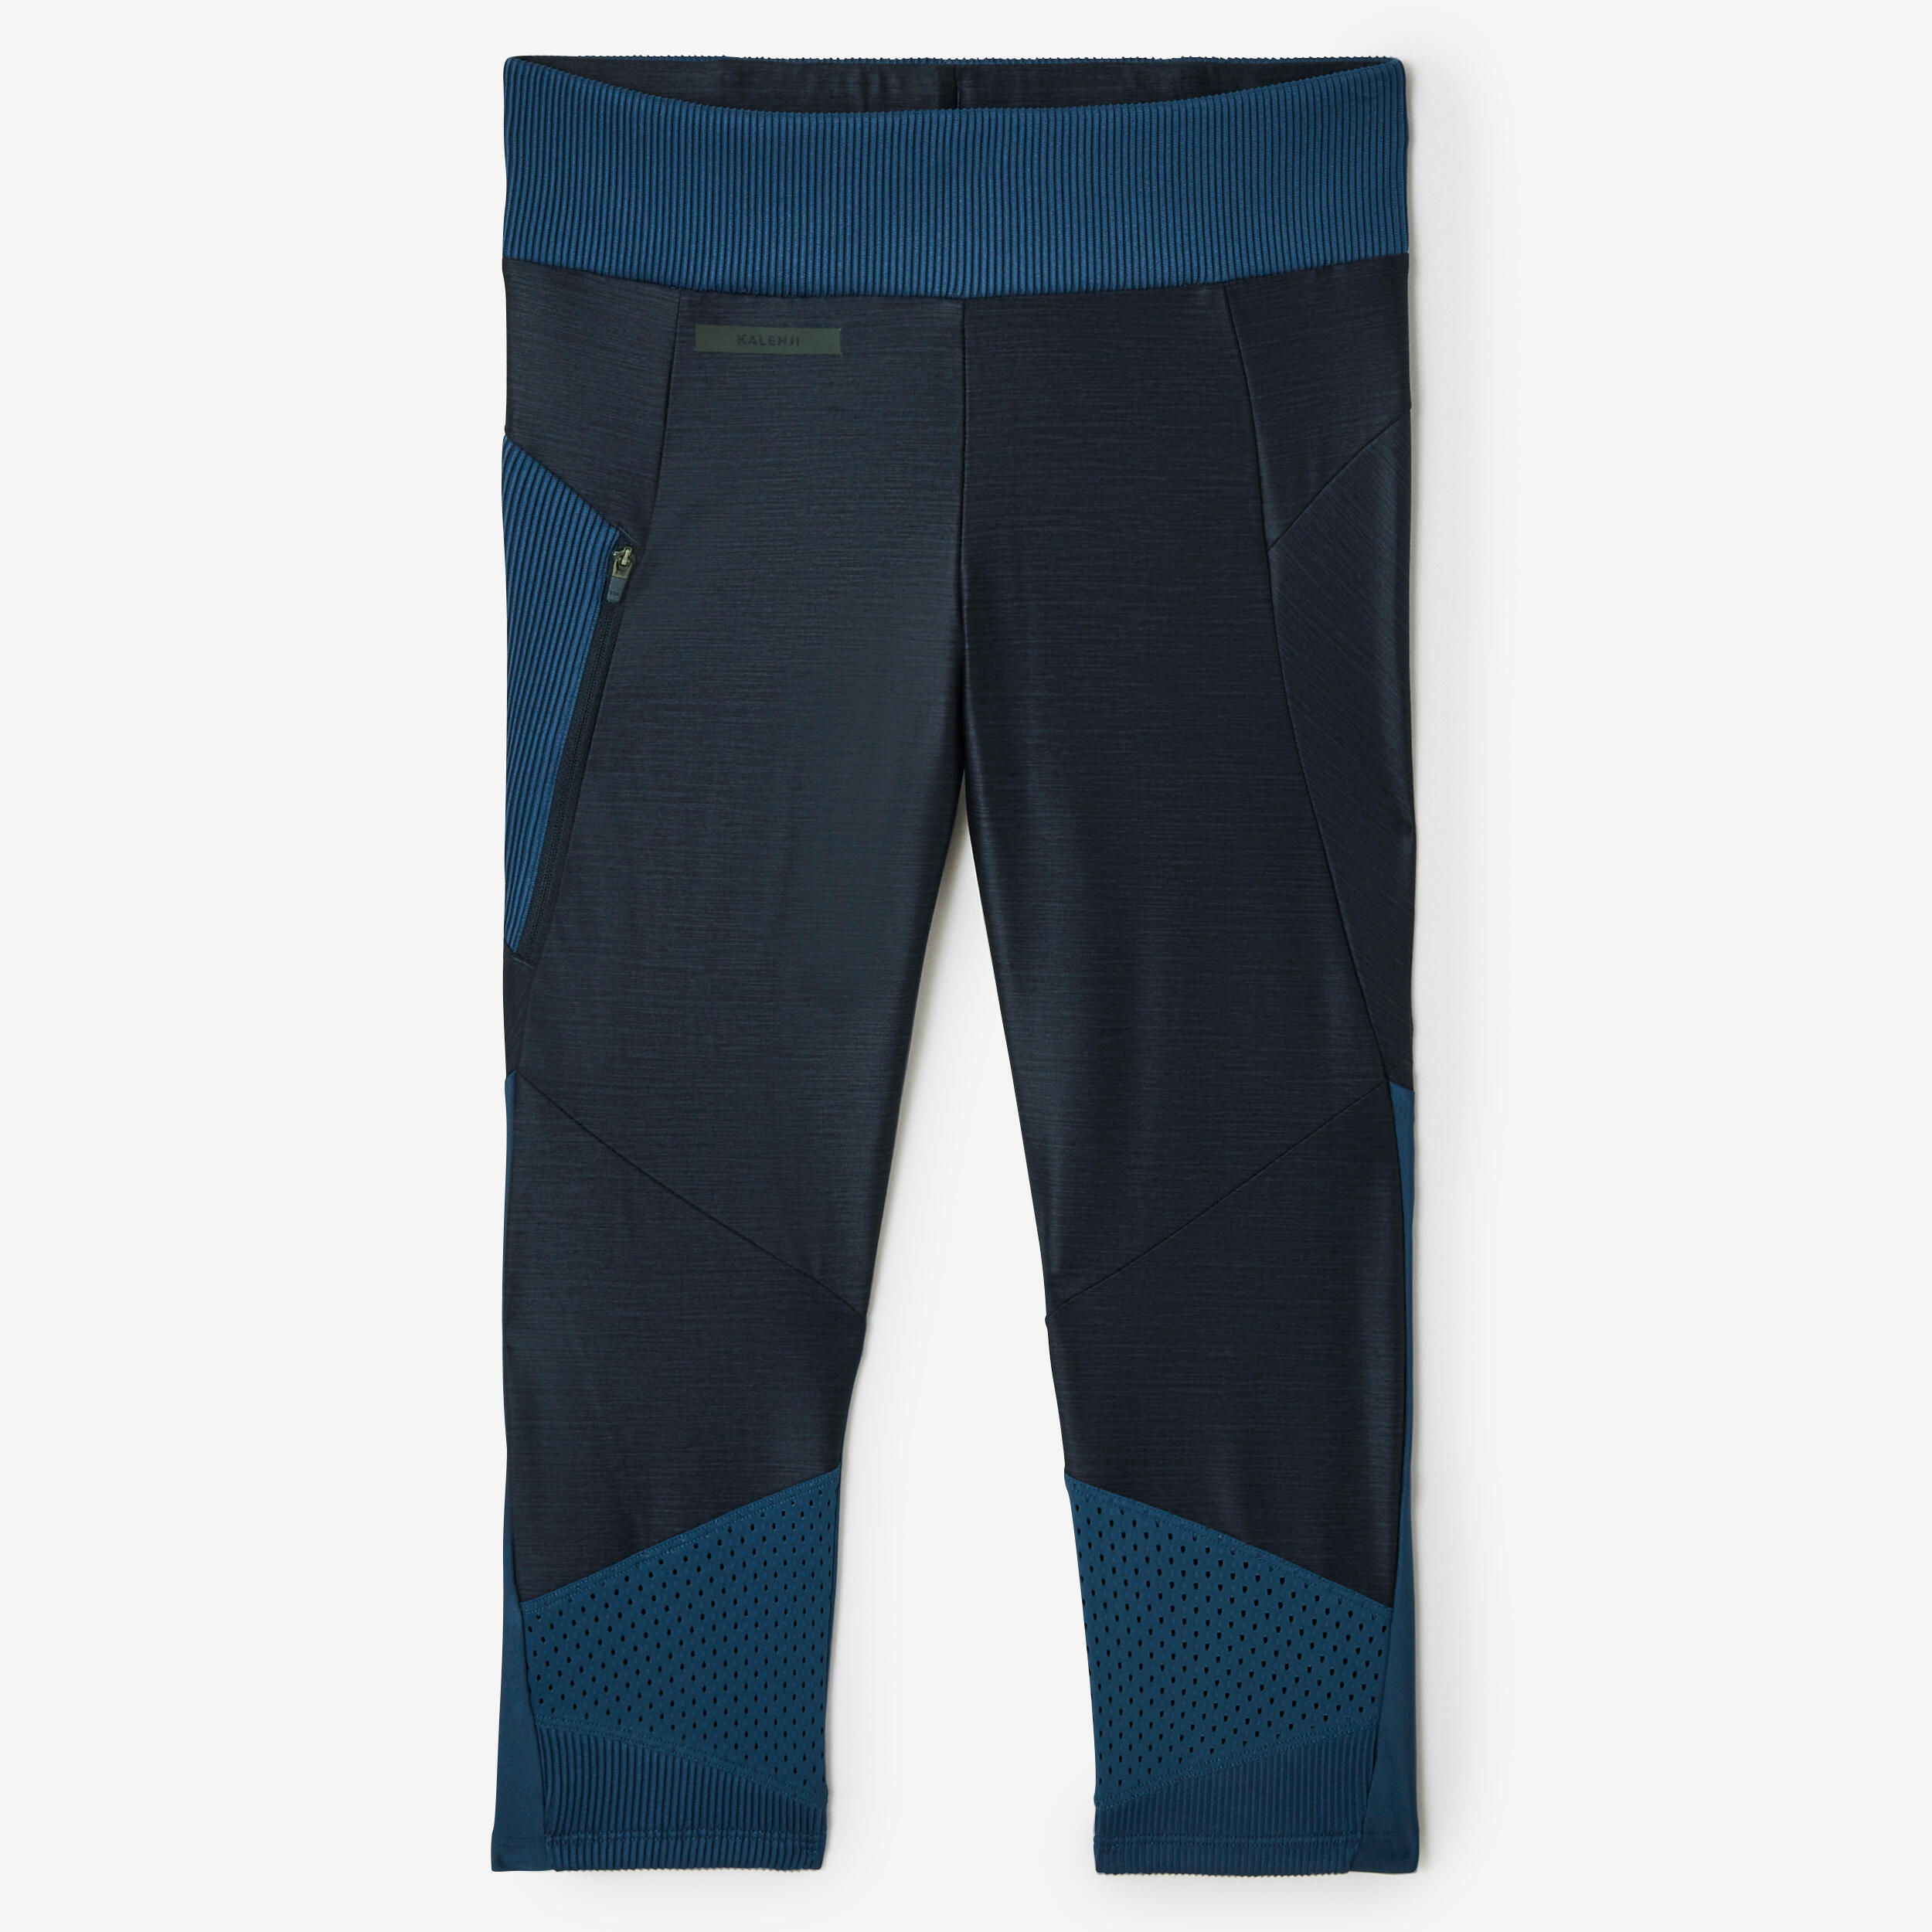 KALENJI Women's short breathable running leggings Dry+ Feel - blue